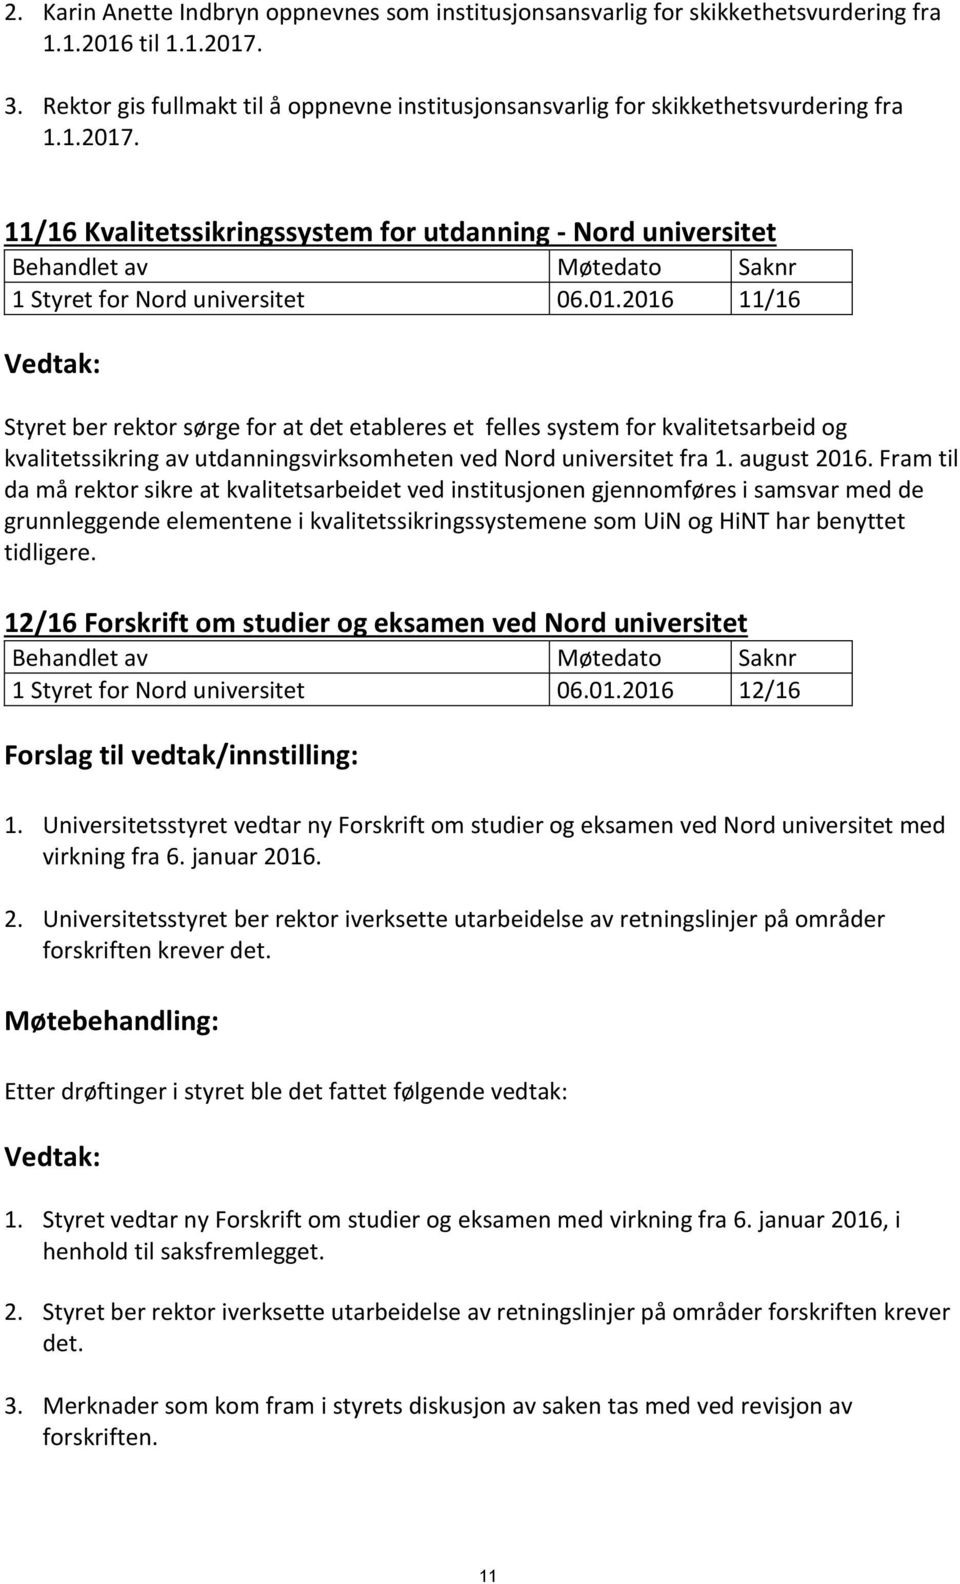 11/16 Kvalitetssikringssystem for utdanning - Nord universitet Behandlet av Møtedato Saknr 1 Styret for Nord universitet 06.01.